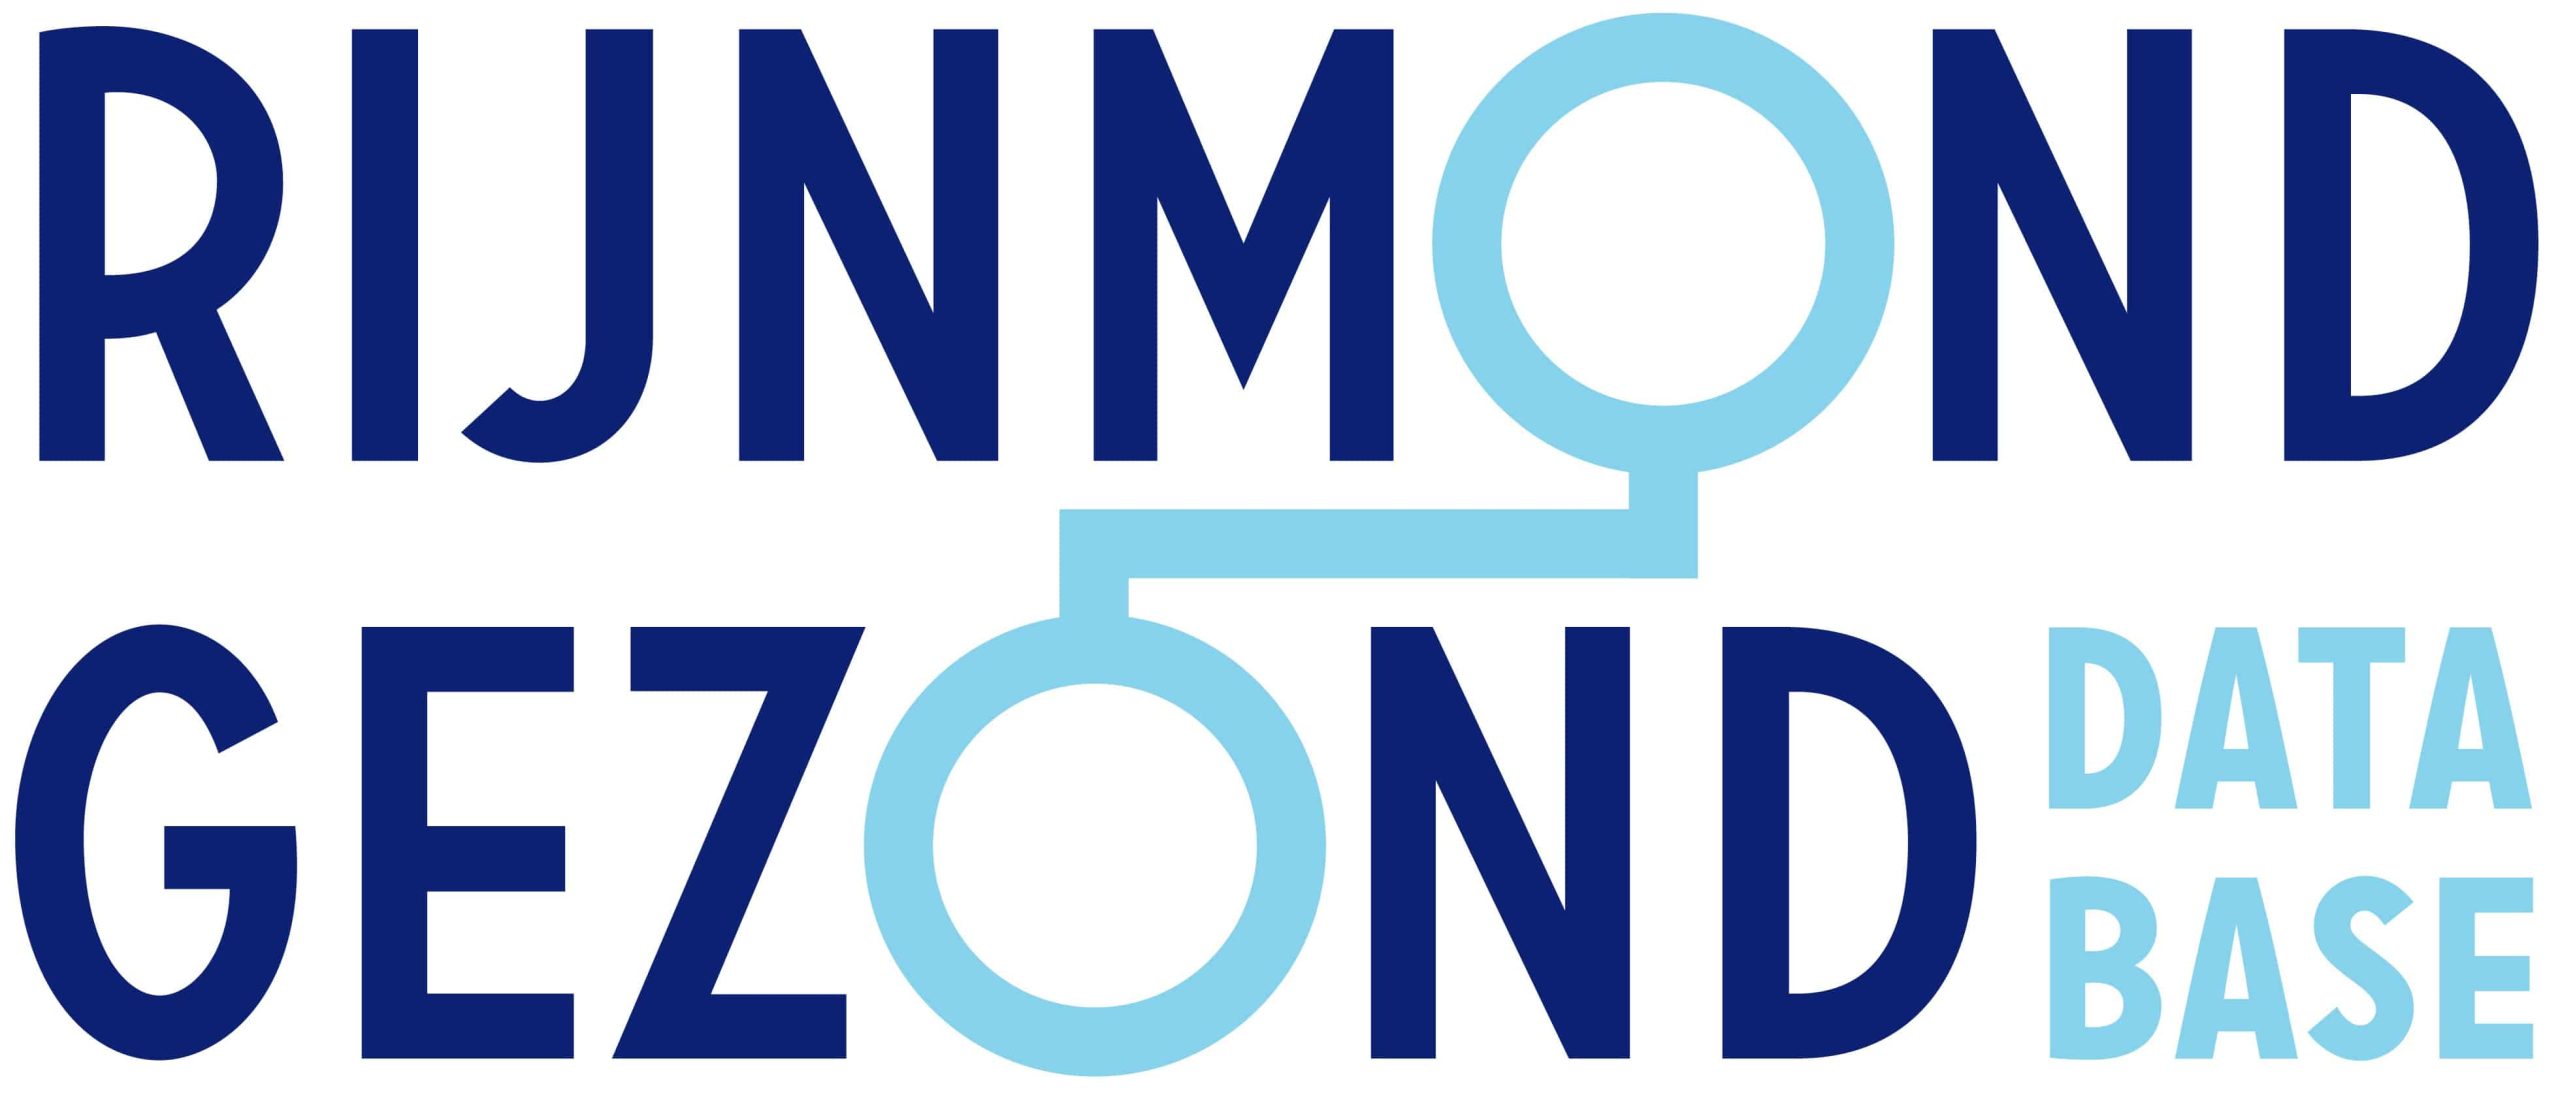 Rijnmond Gezond Database Coronatijden in NEderland.jpg